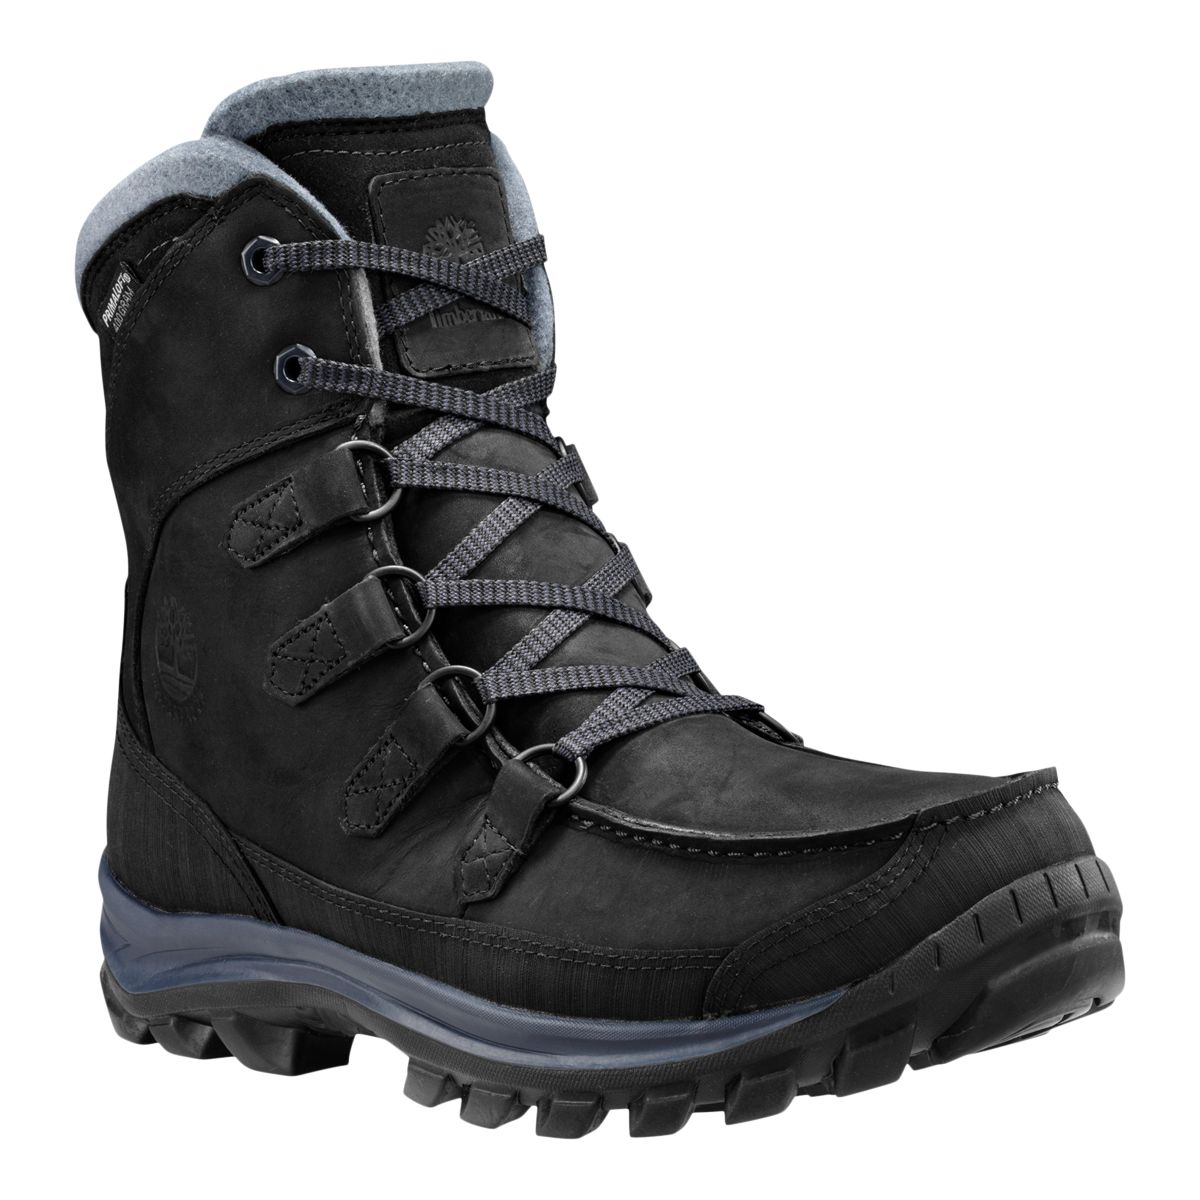 Timberland Men's Chillberg Premium Winter Boots - Black